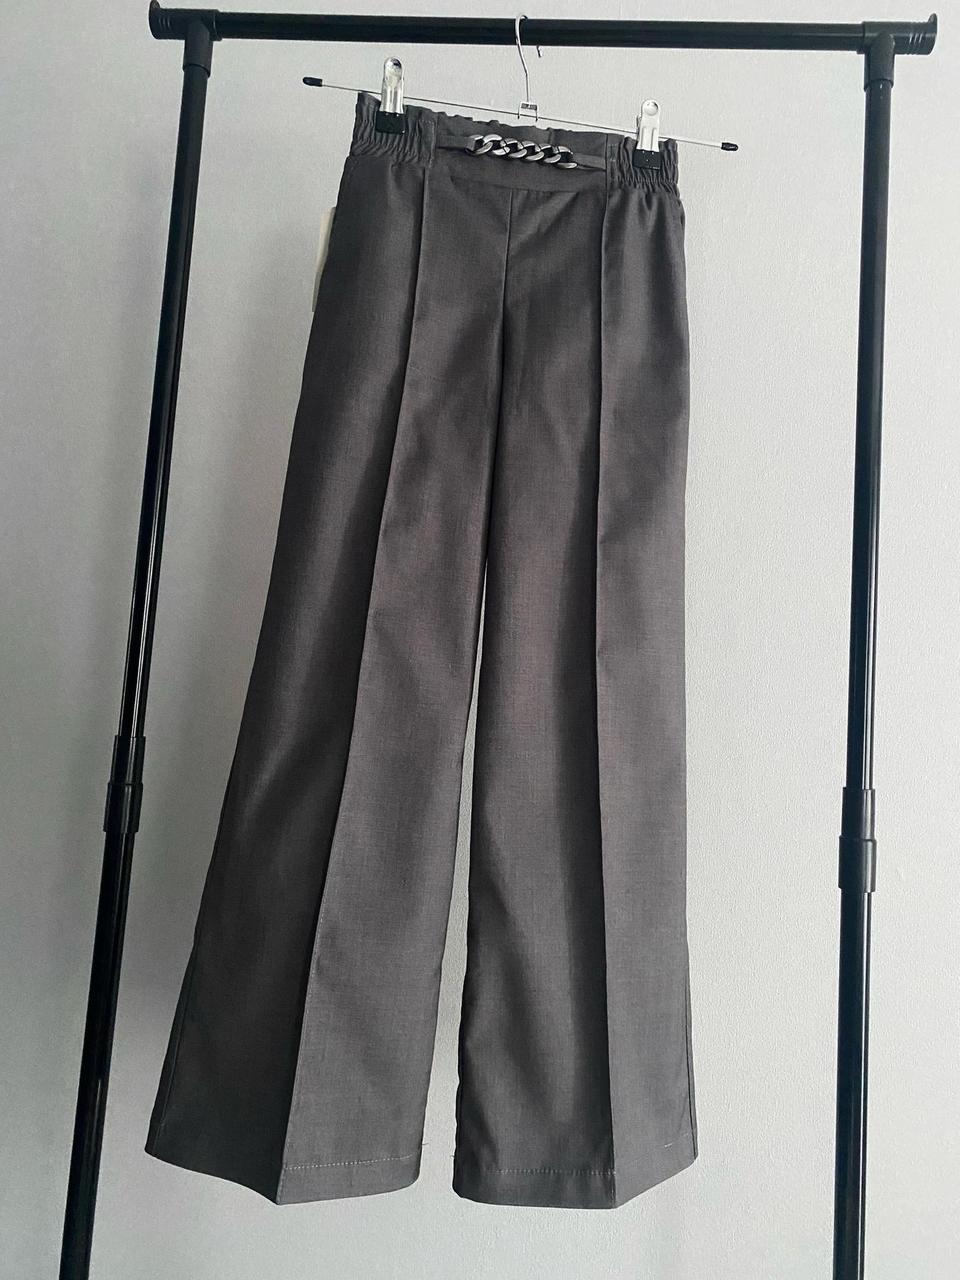 Дитячі брюки палаццо для дівчинки підлітка сірі штани палацо шкільні підліткові в школу